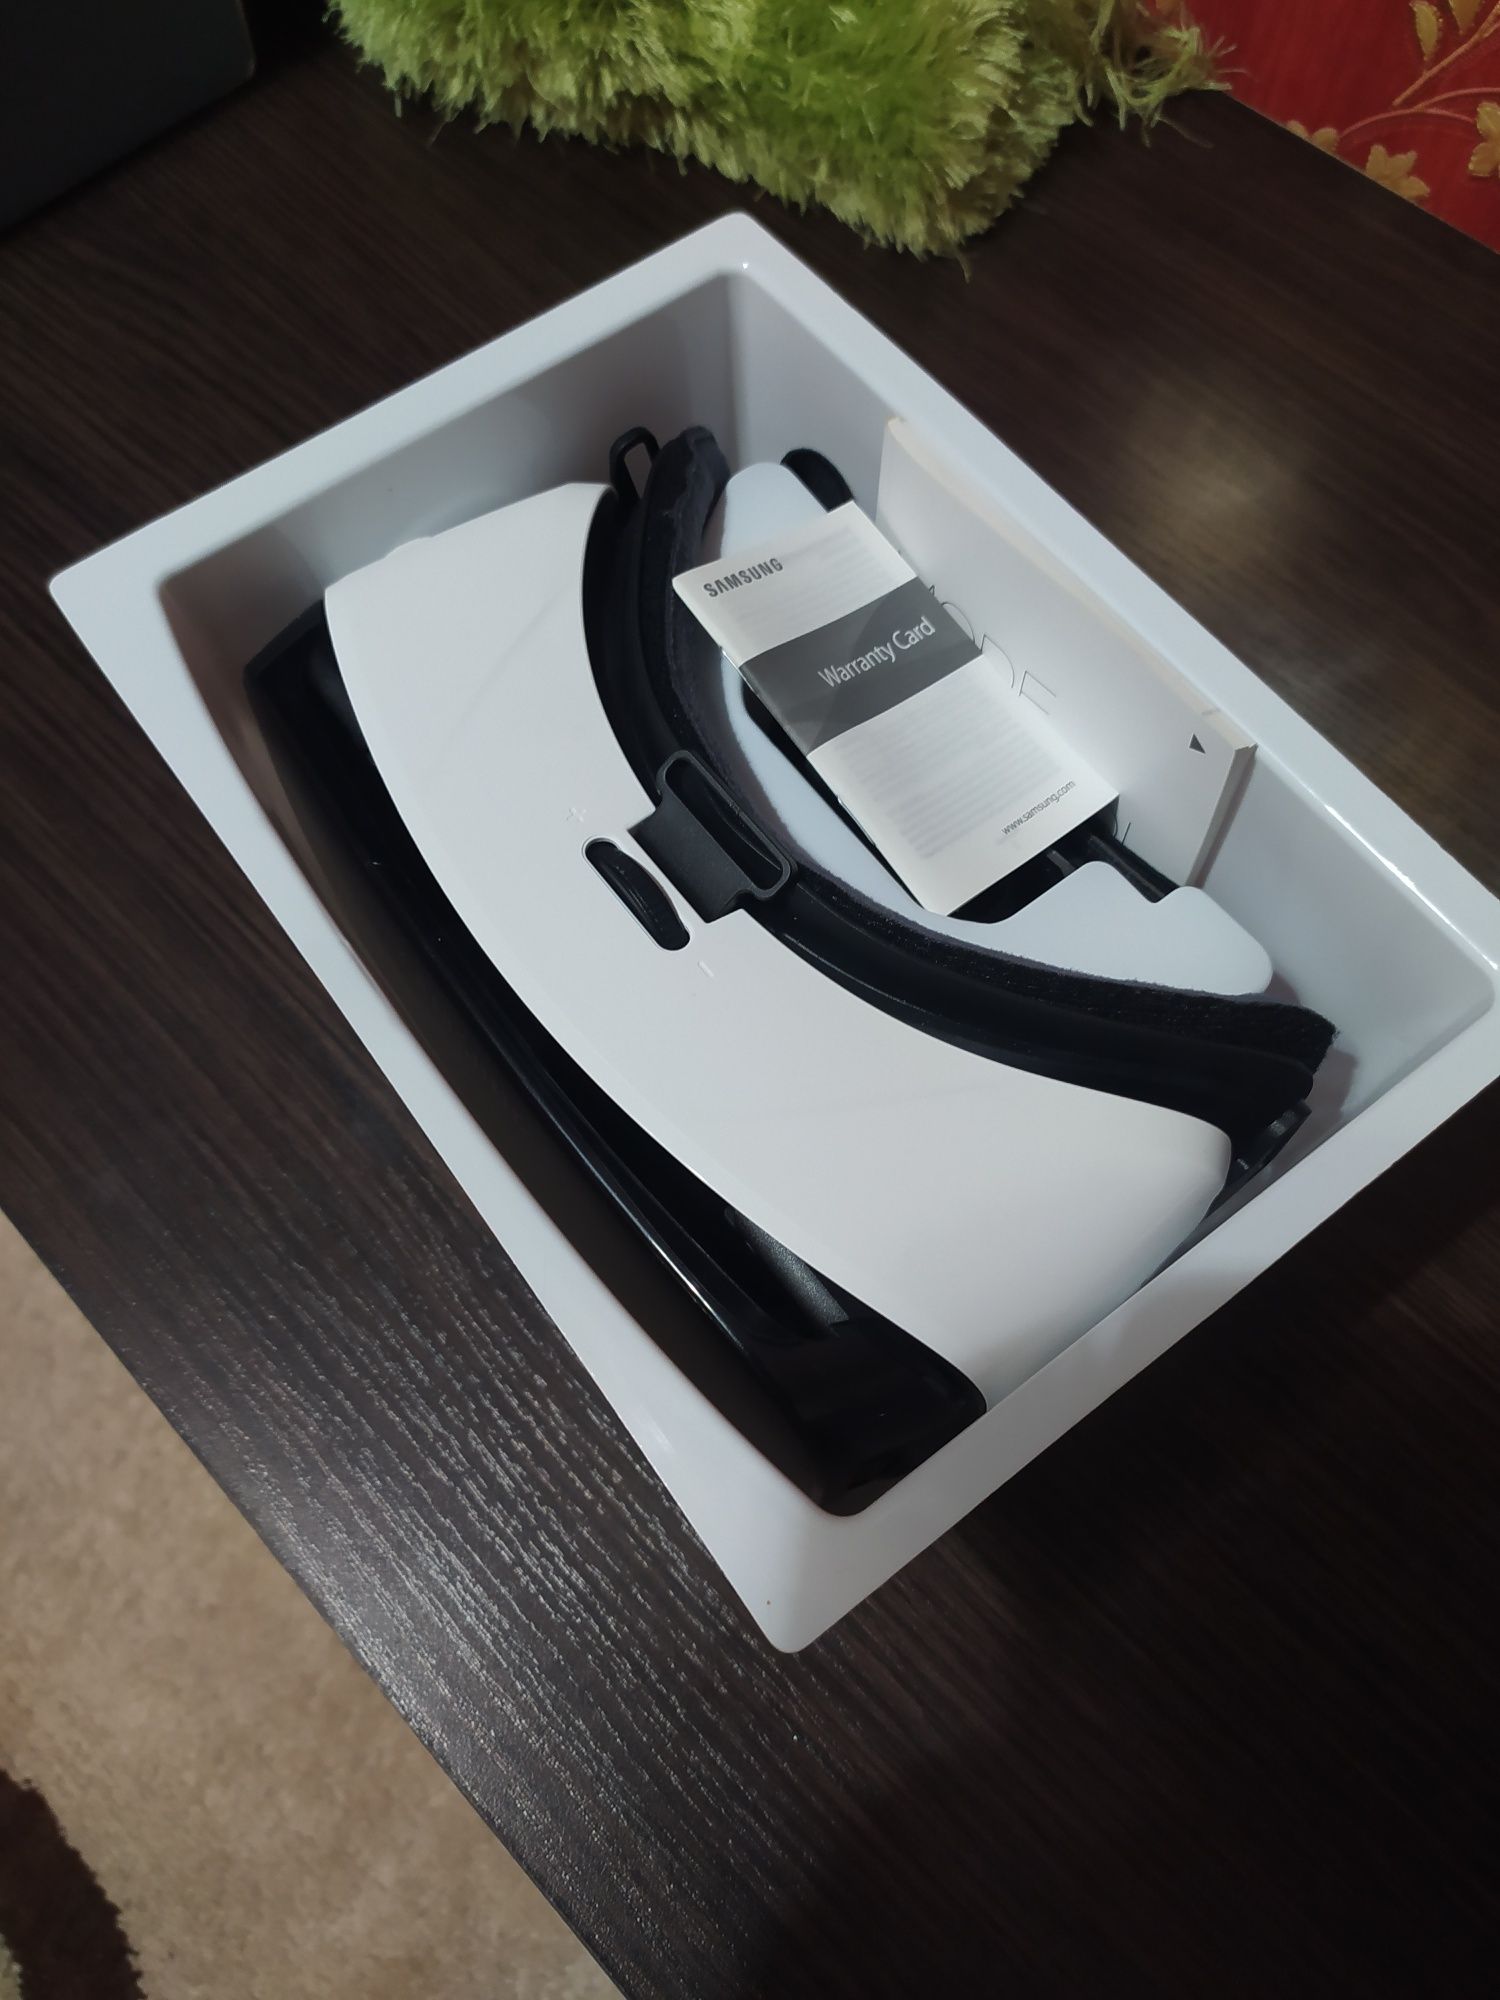 Очки виртуальной реальности SAMSUNG Gear VR